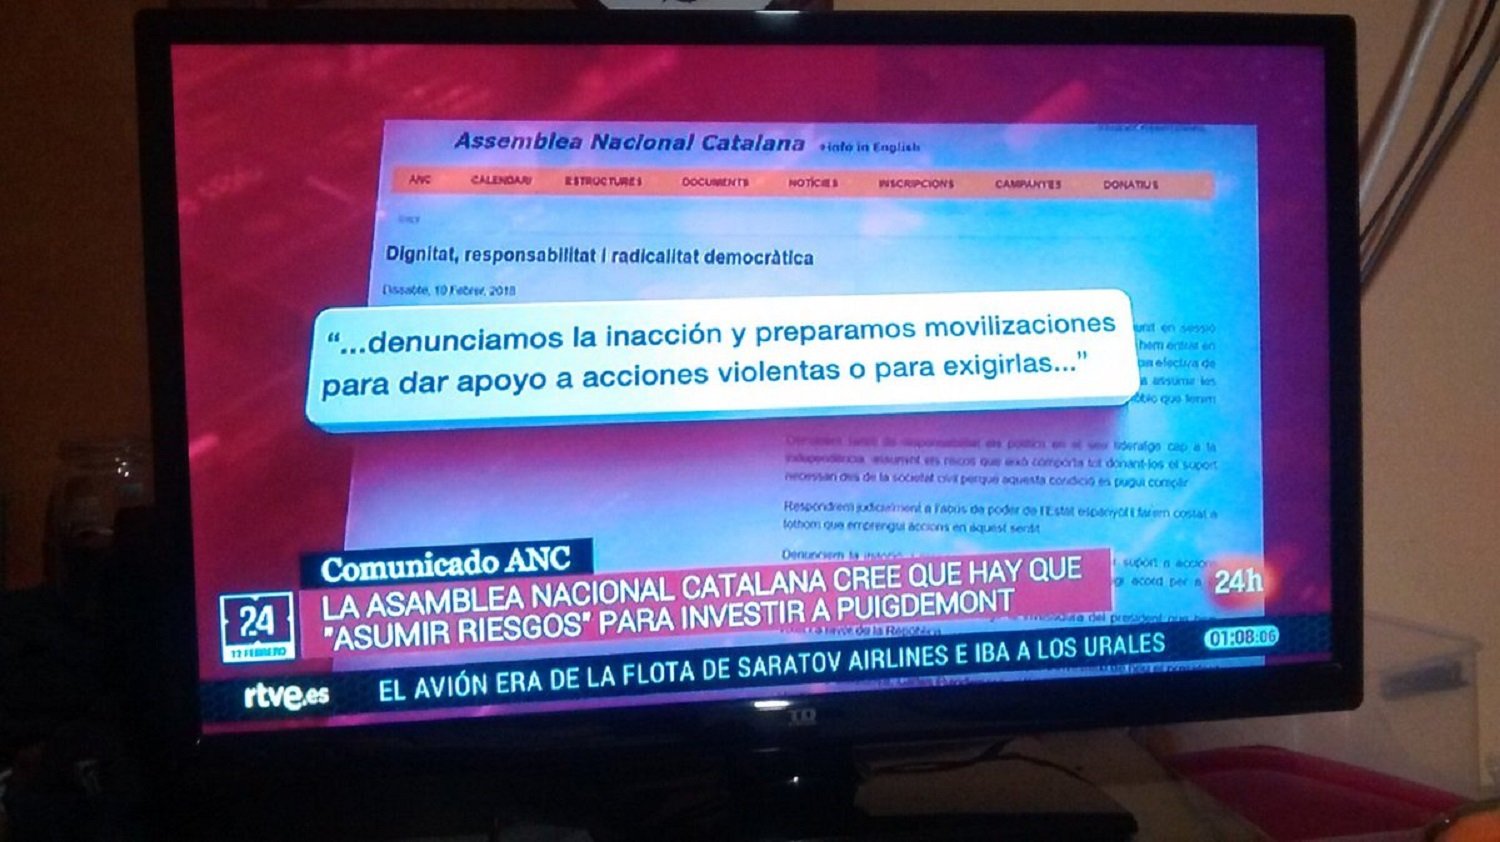 TVE tradueix "accions valentes" per "accions violentes"